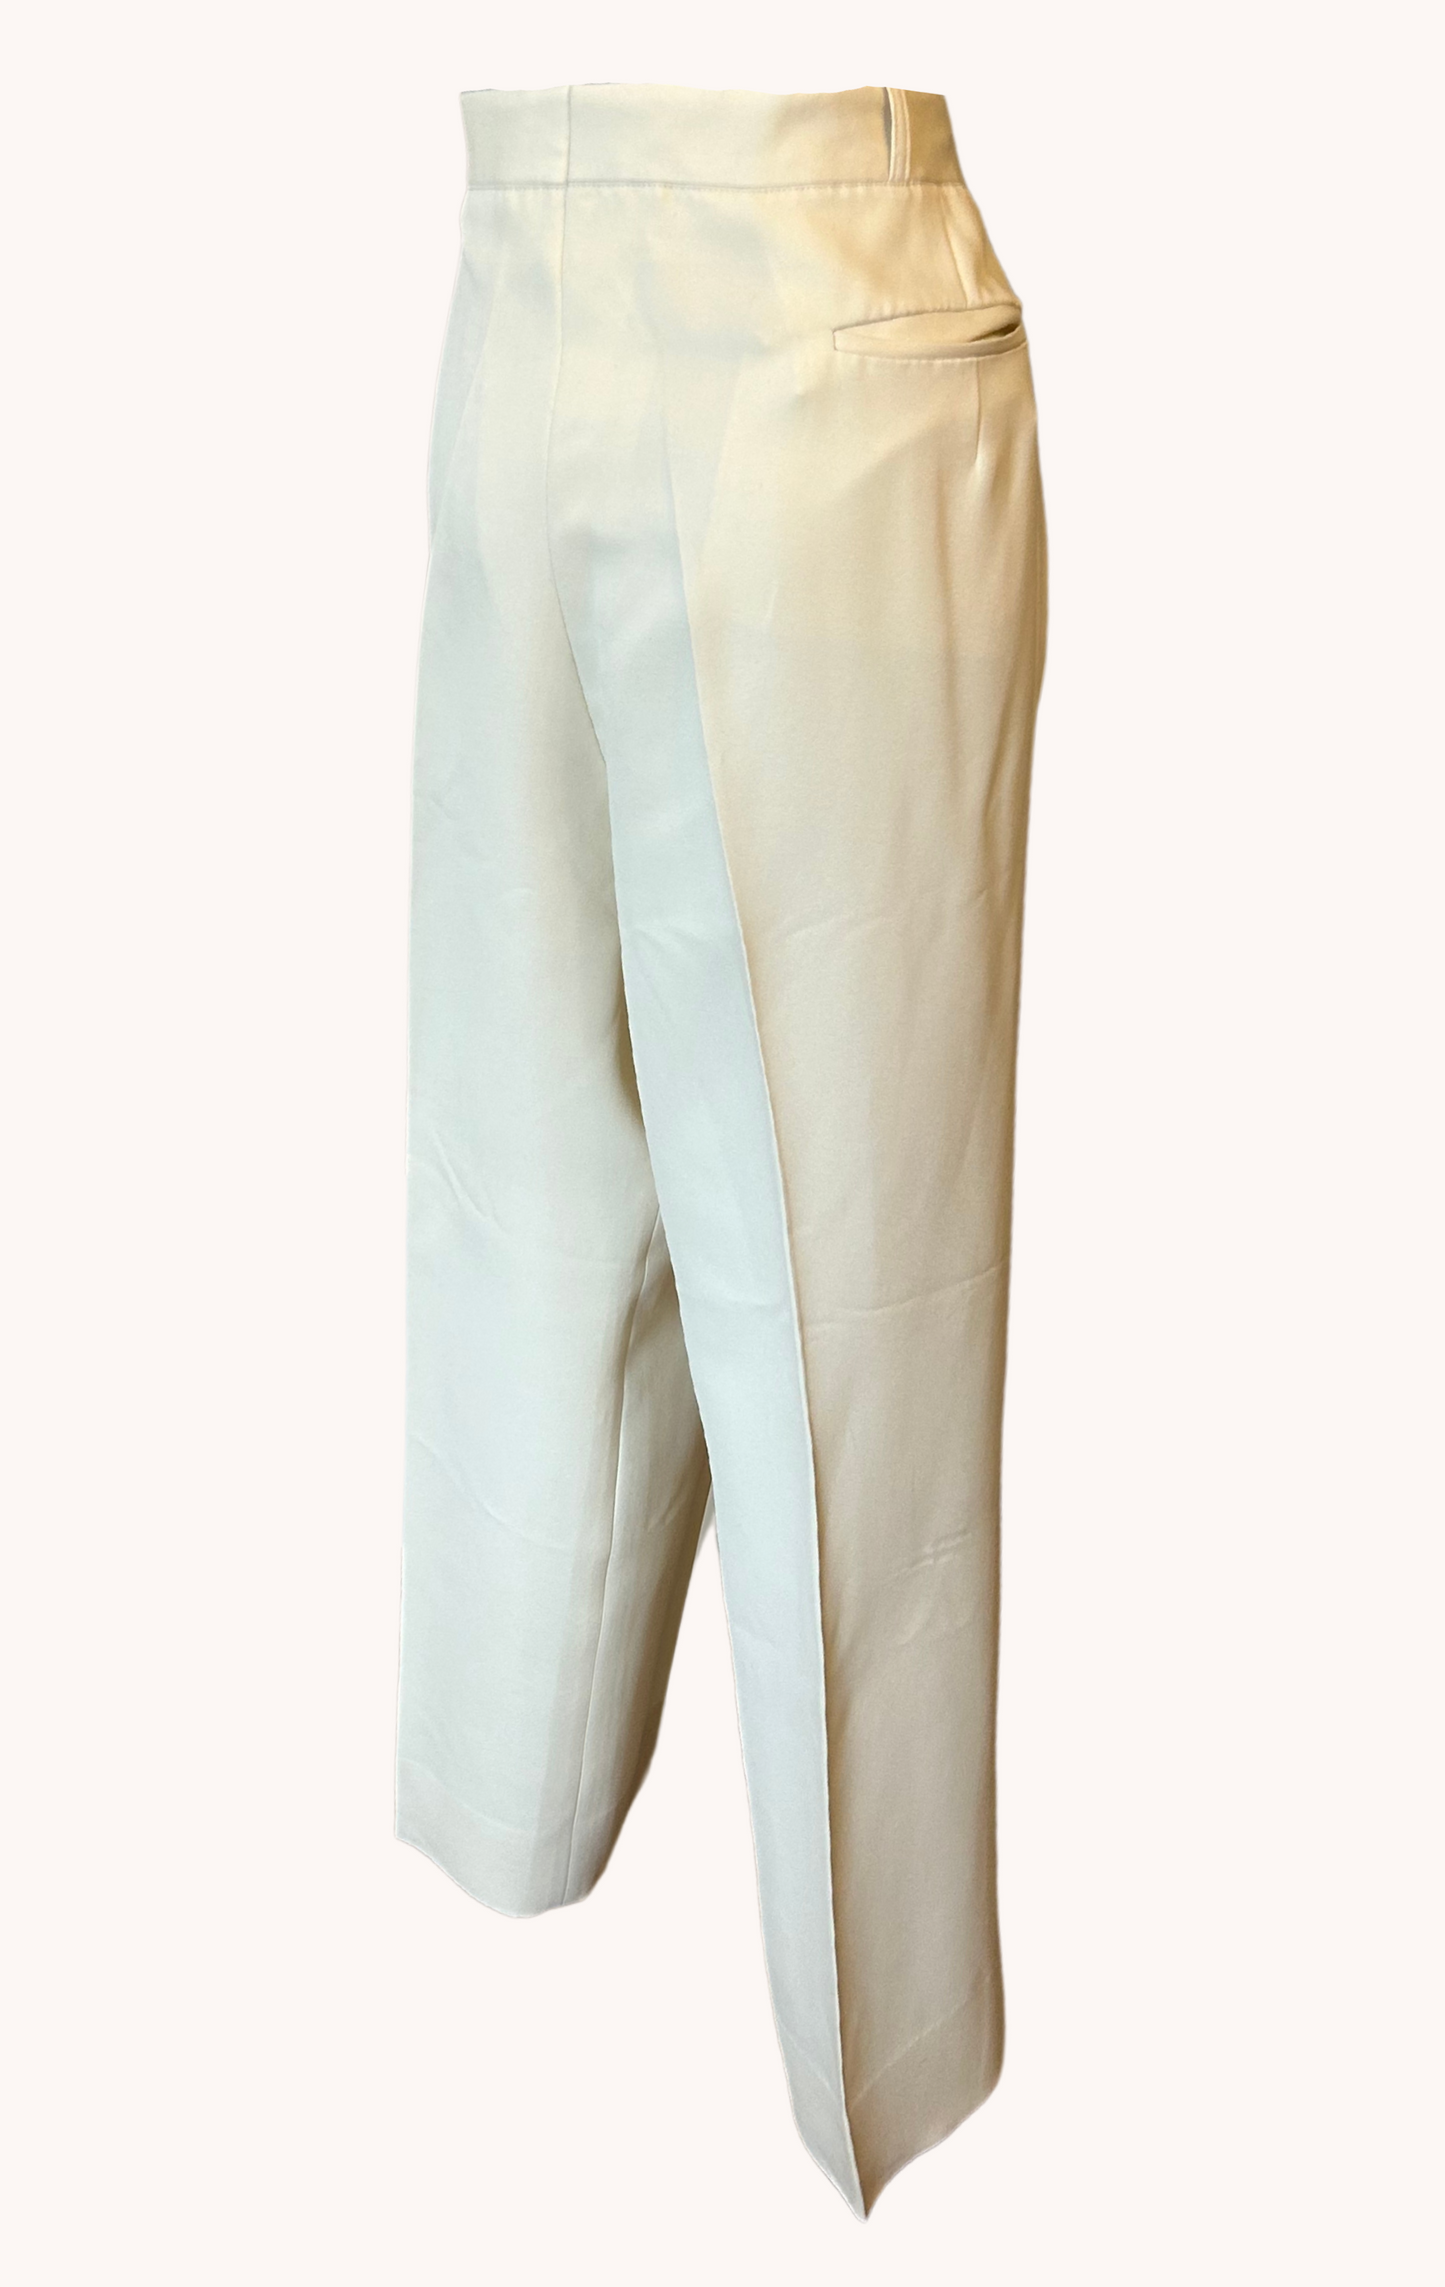 Pantalon crème T.44